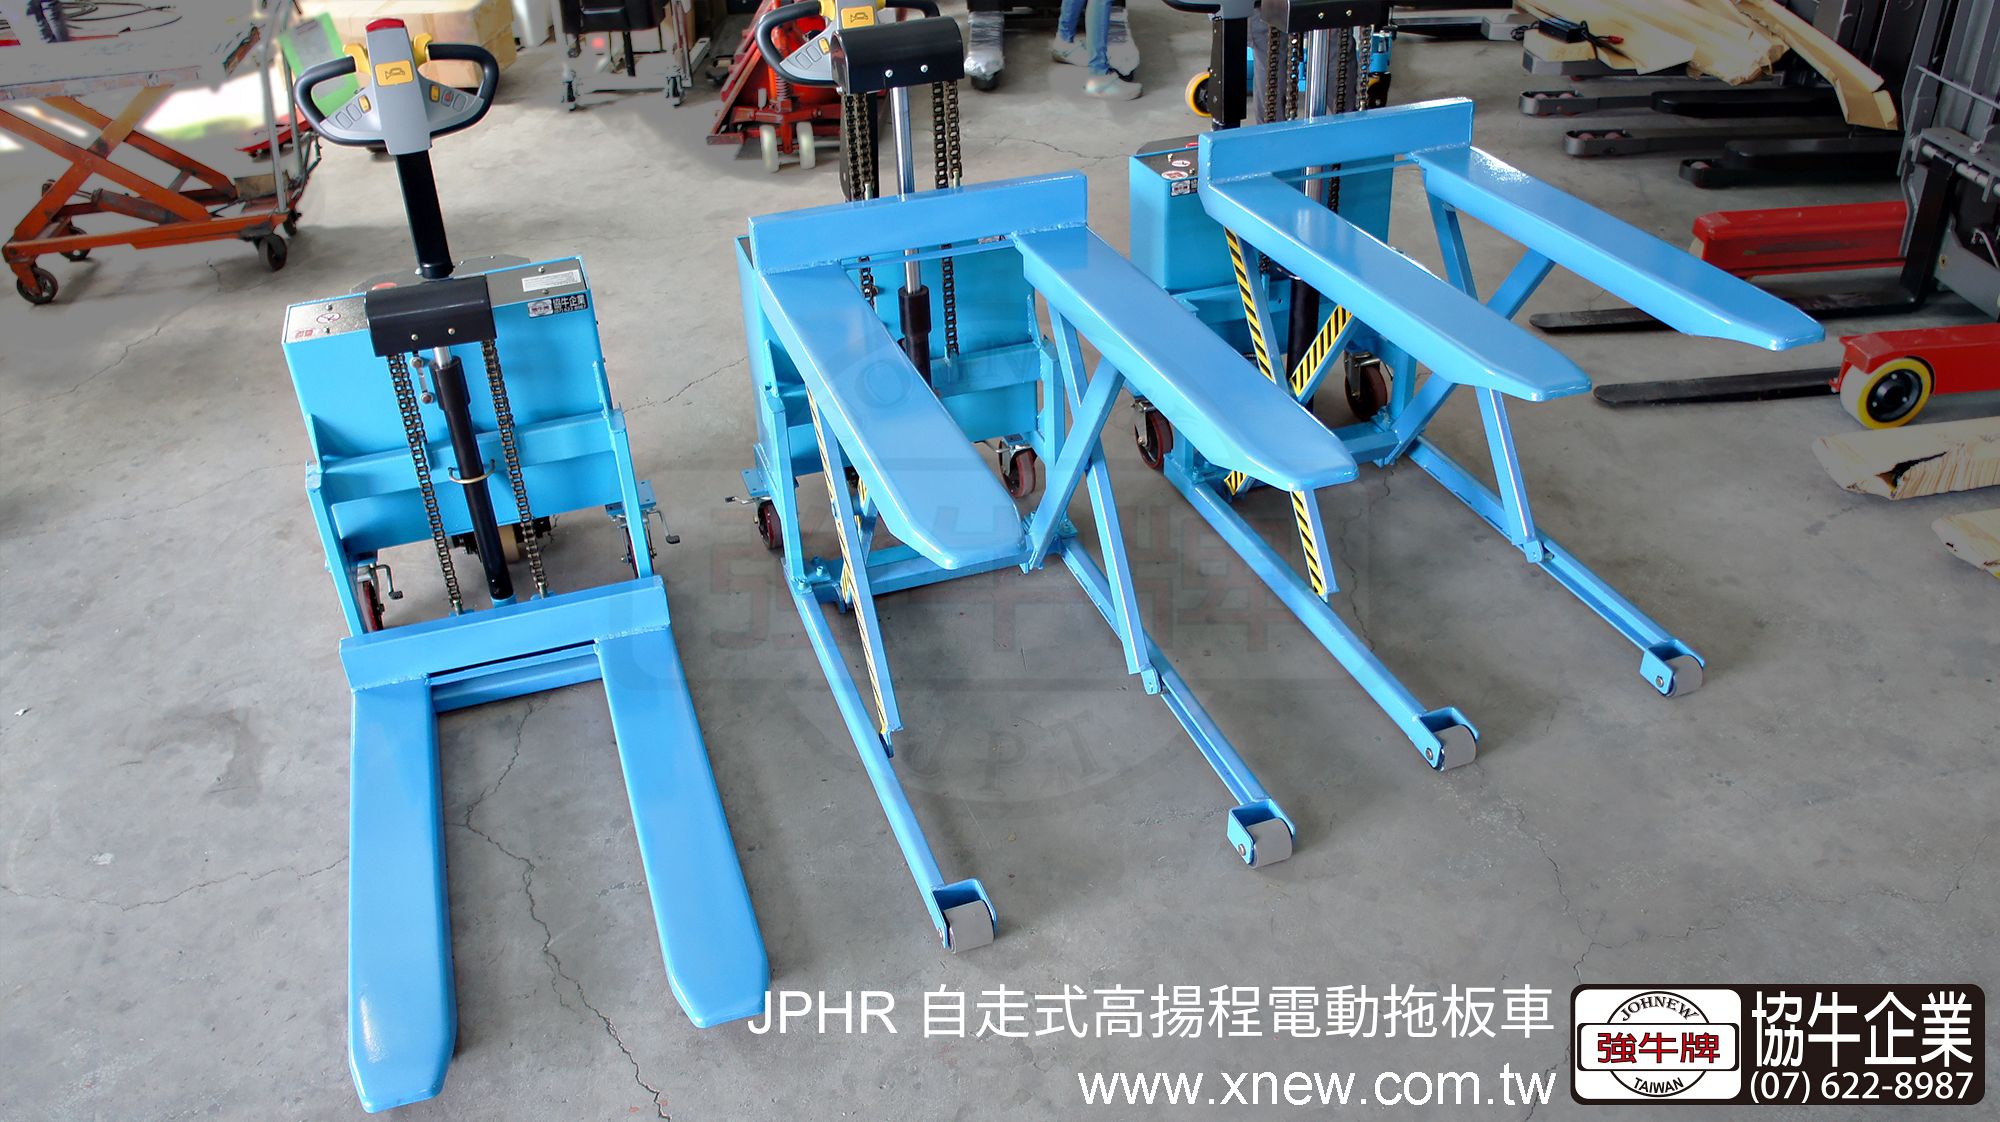 強牛牌JPHR自走式高揚程電動拖板車, 藍色正面展示, 三台機台揚高最高位及最低位同時展示